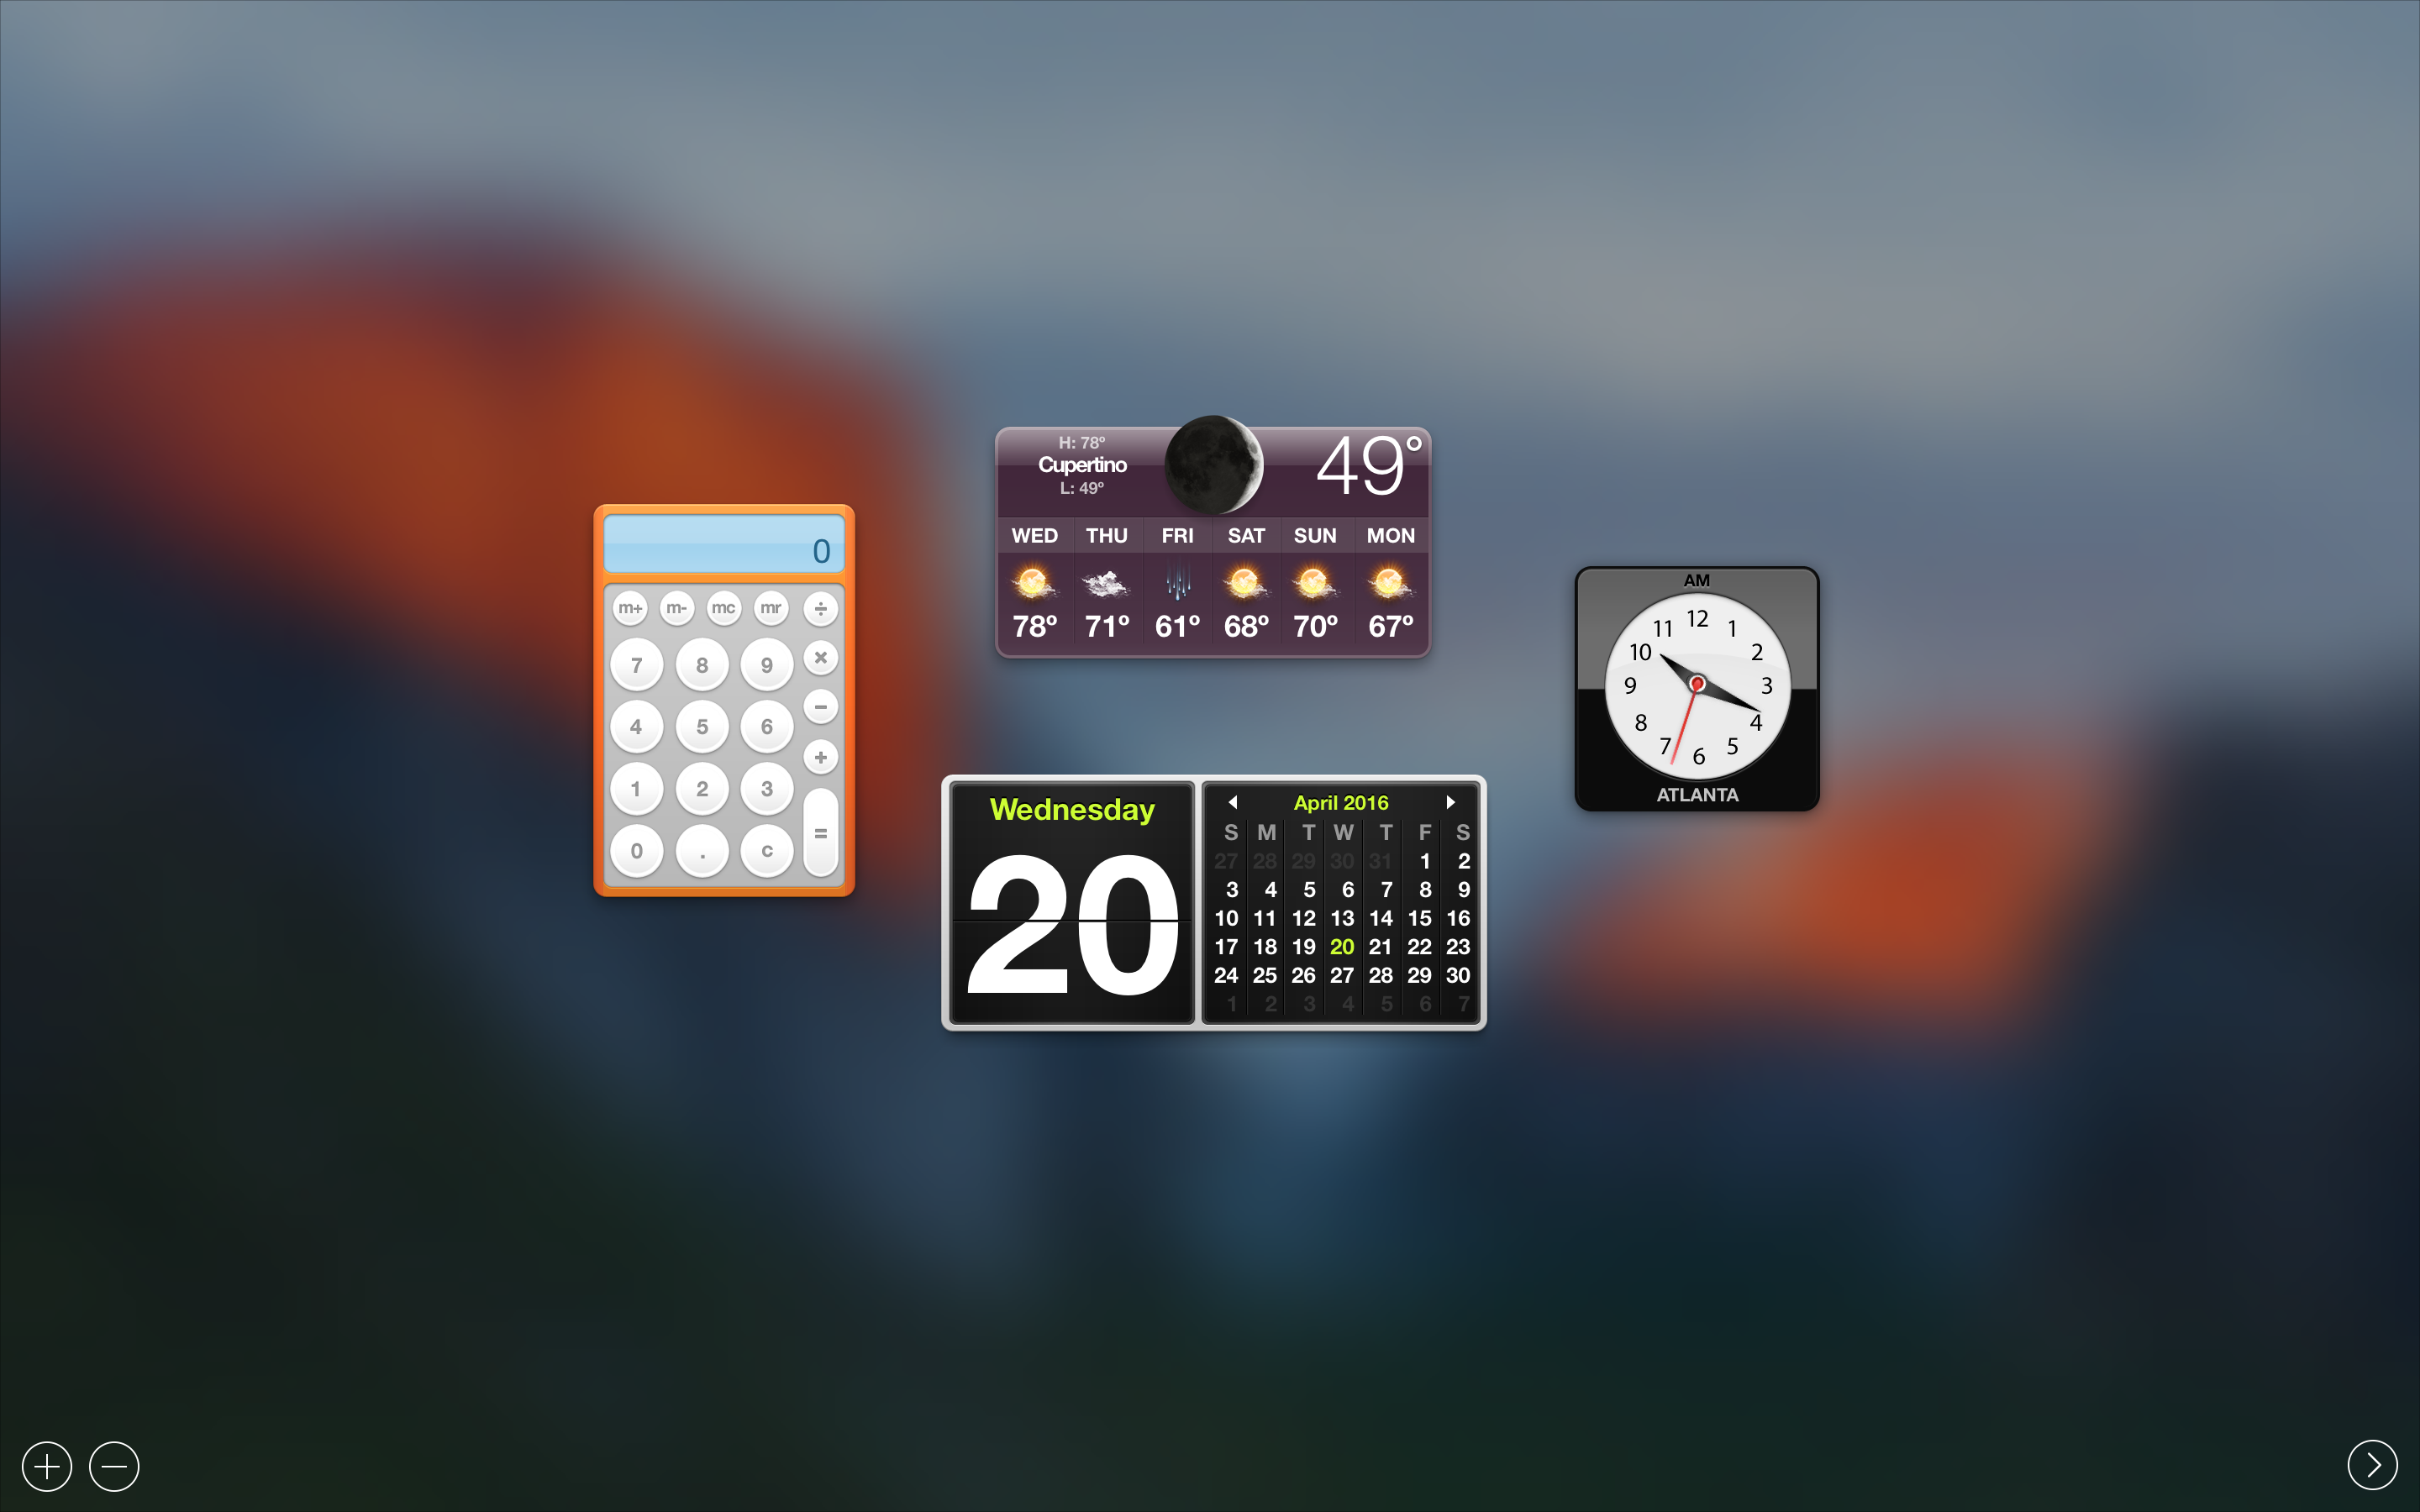 OS X Dashboard for widgets